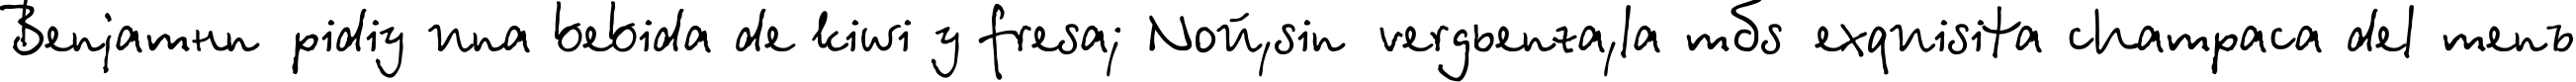 Пример написания шрифтом БетинаСкрипт текста на испанском